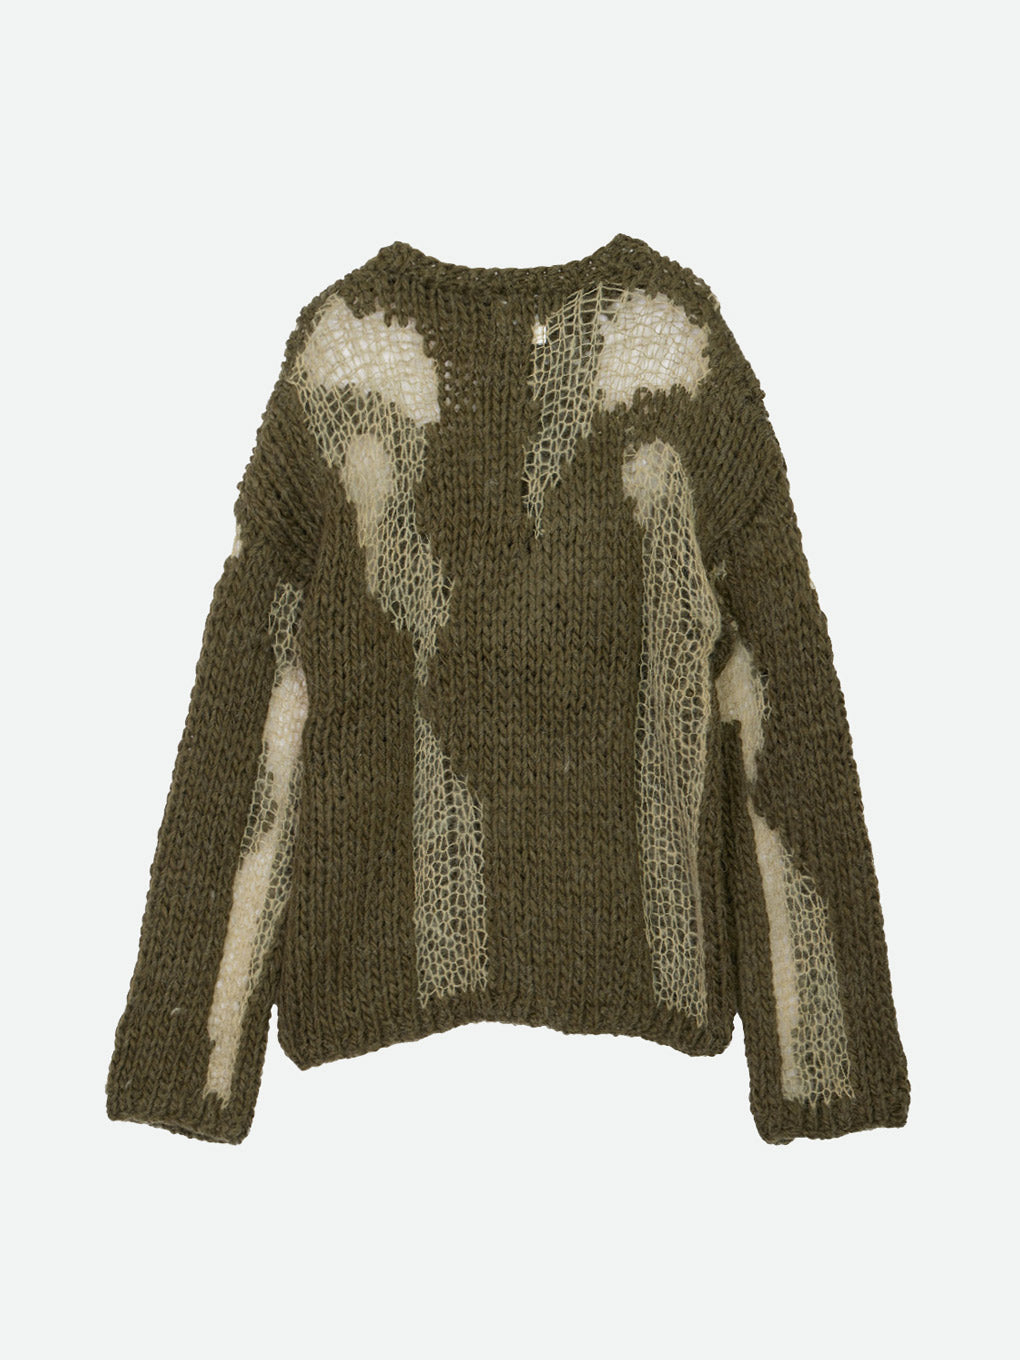 KHOKI】Intarsia-knit jumper サイズ2 - ajnodes.com